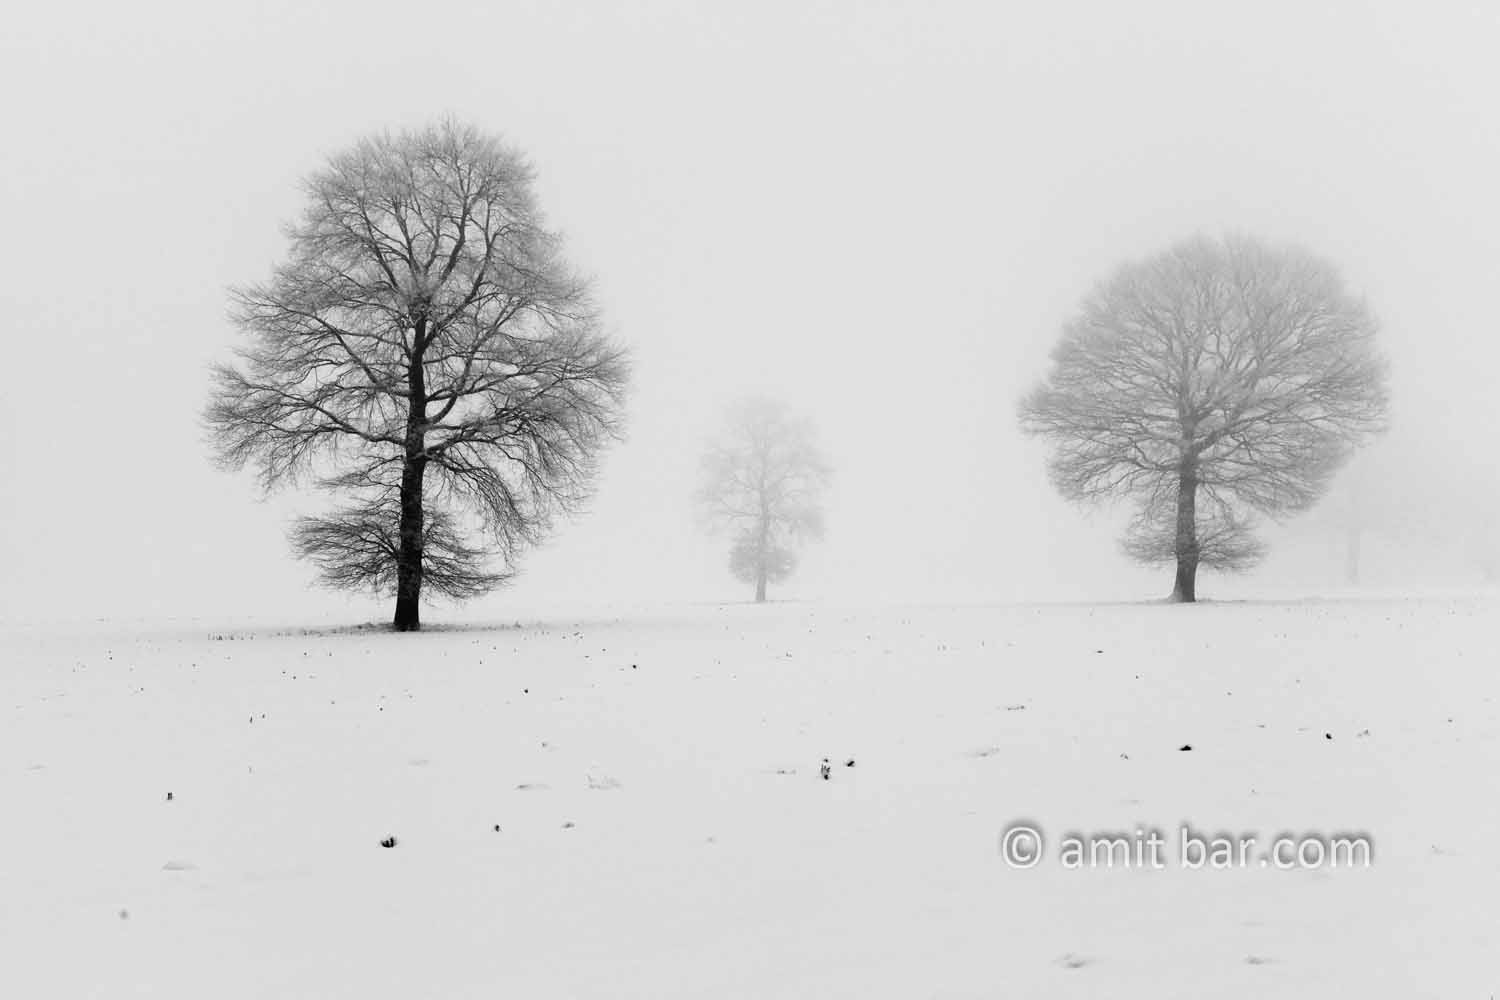 Oaks in snow III: Three oaks in the mist